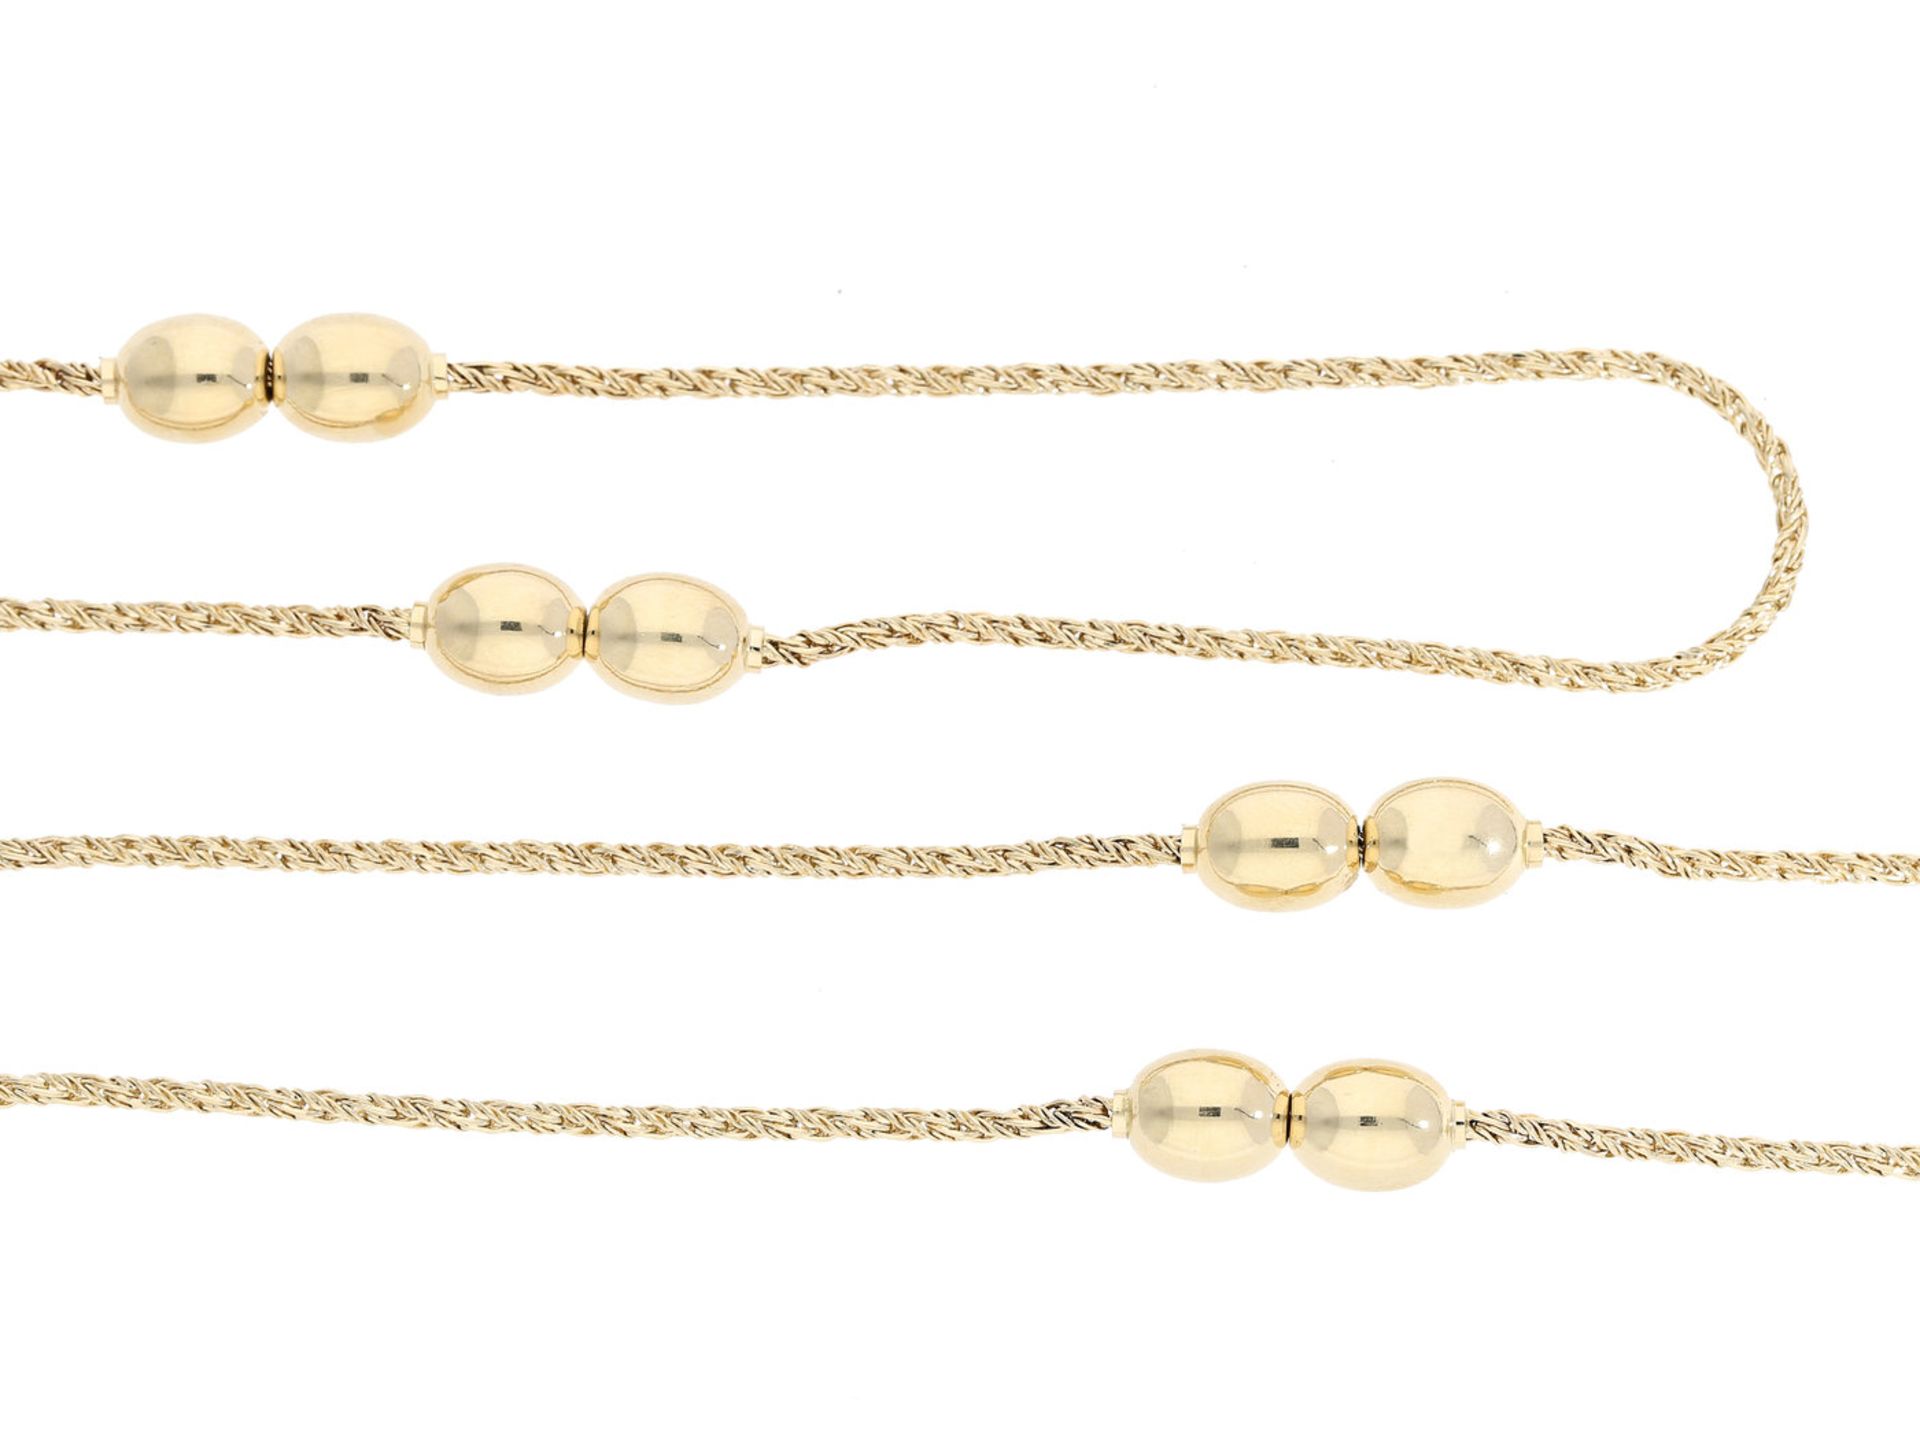 Kette: endlose Goldkette mit dekorativen Zwischenstücken, neuwertigCa. 79cm lang, ca. 20g, 14K